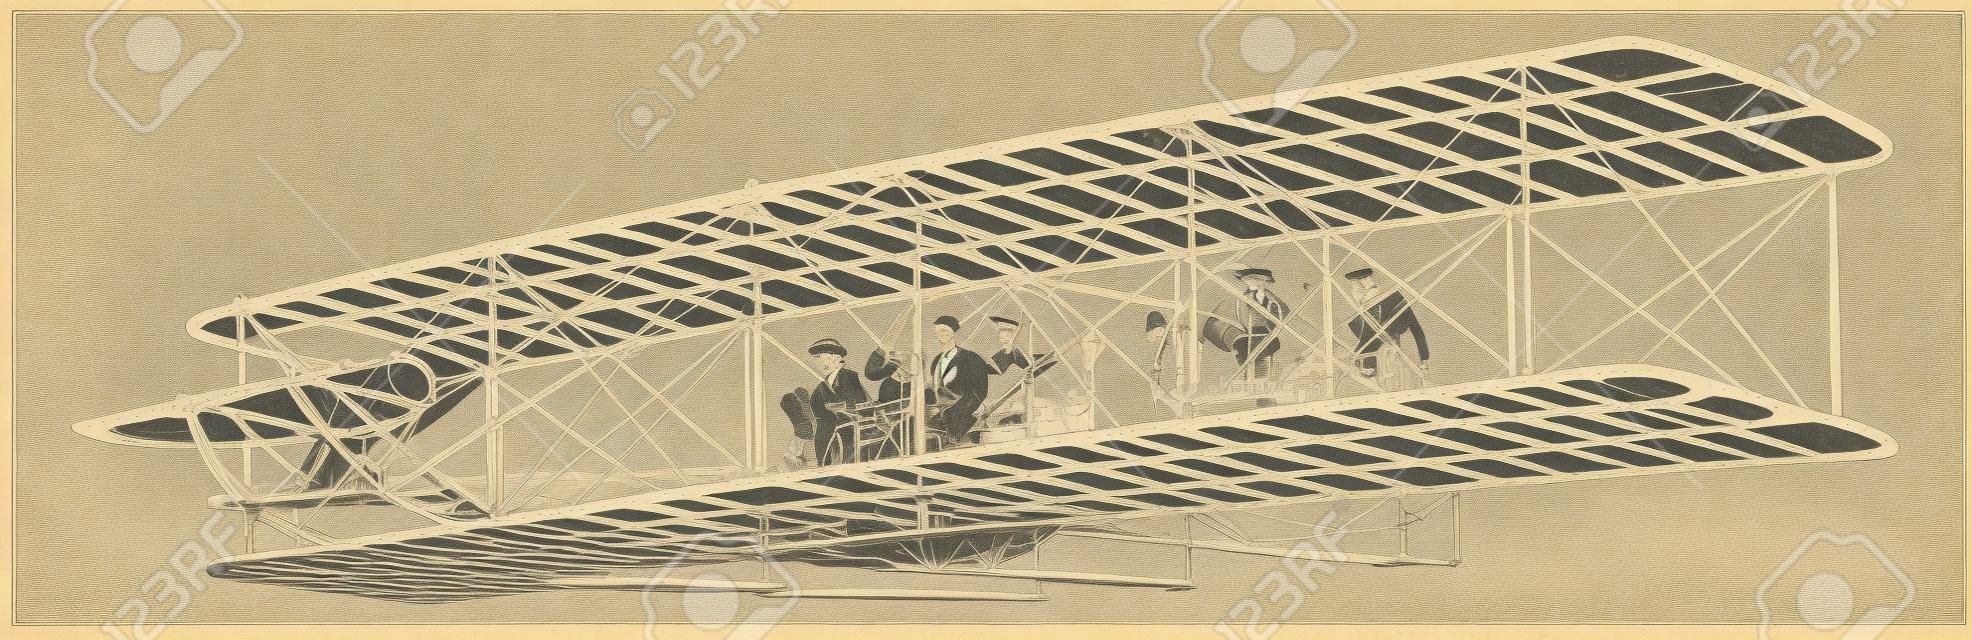 L'expérience de vol la plus réussie de l'avion des frères Wright qui, en 1908, a fait de nombreuses ascensions réussies, un dessin de ligne vintage ou une illustration de gravure.